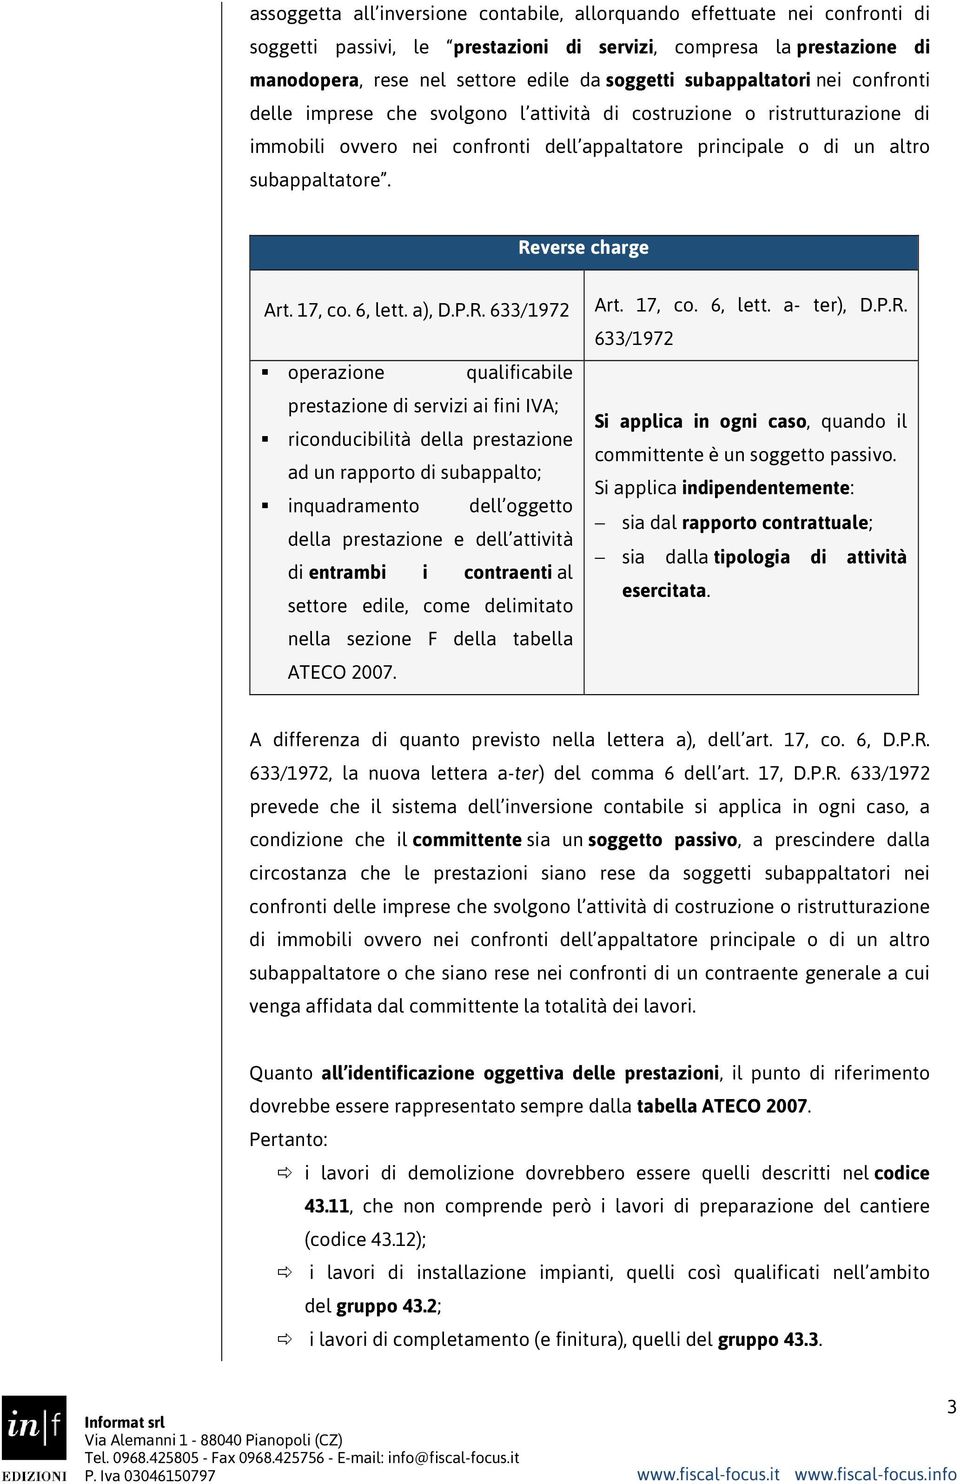 Reverse charge Art. 17, co. 6, lett. a), D.P.R. 633/1972 operazione qualificabile prestazione di servizi ai fini IVA; riconducibilità della prestazione ad un rapporto di subappalto; inquadramento